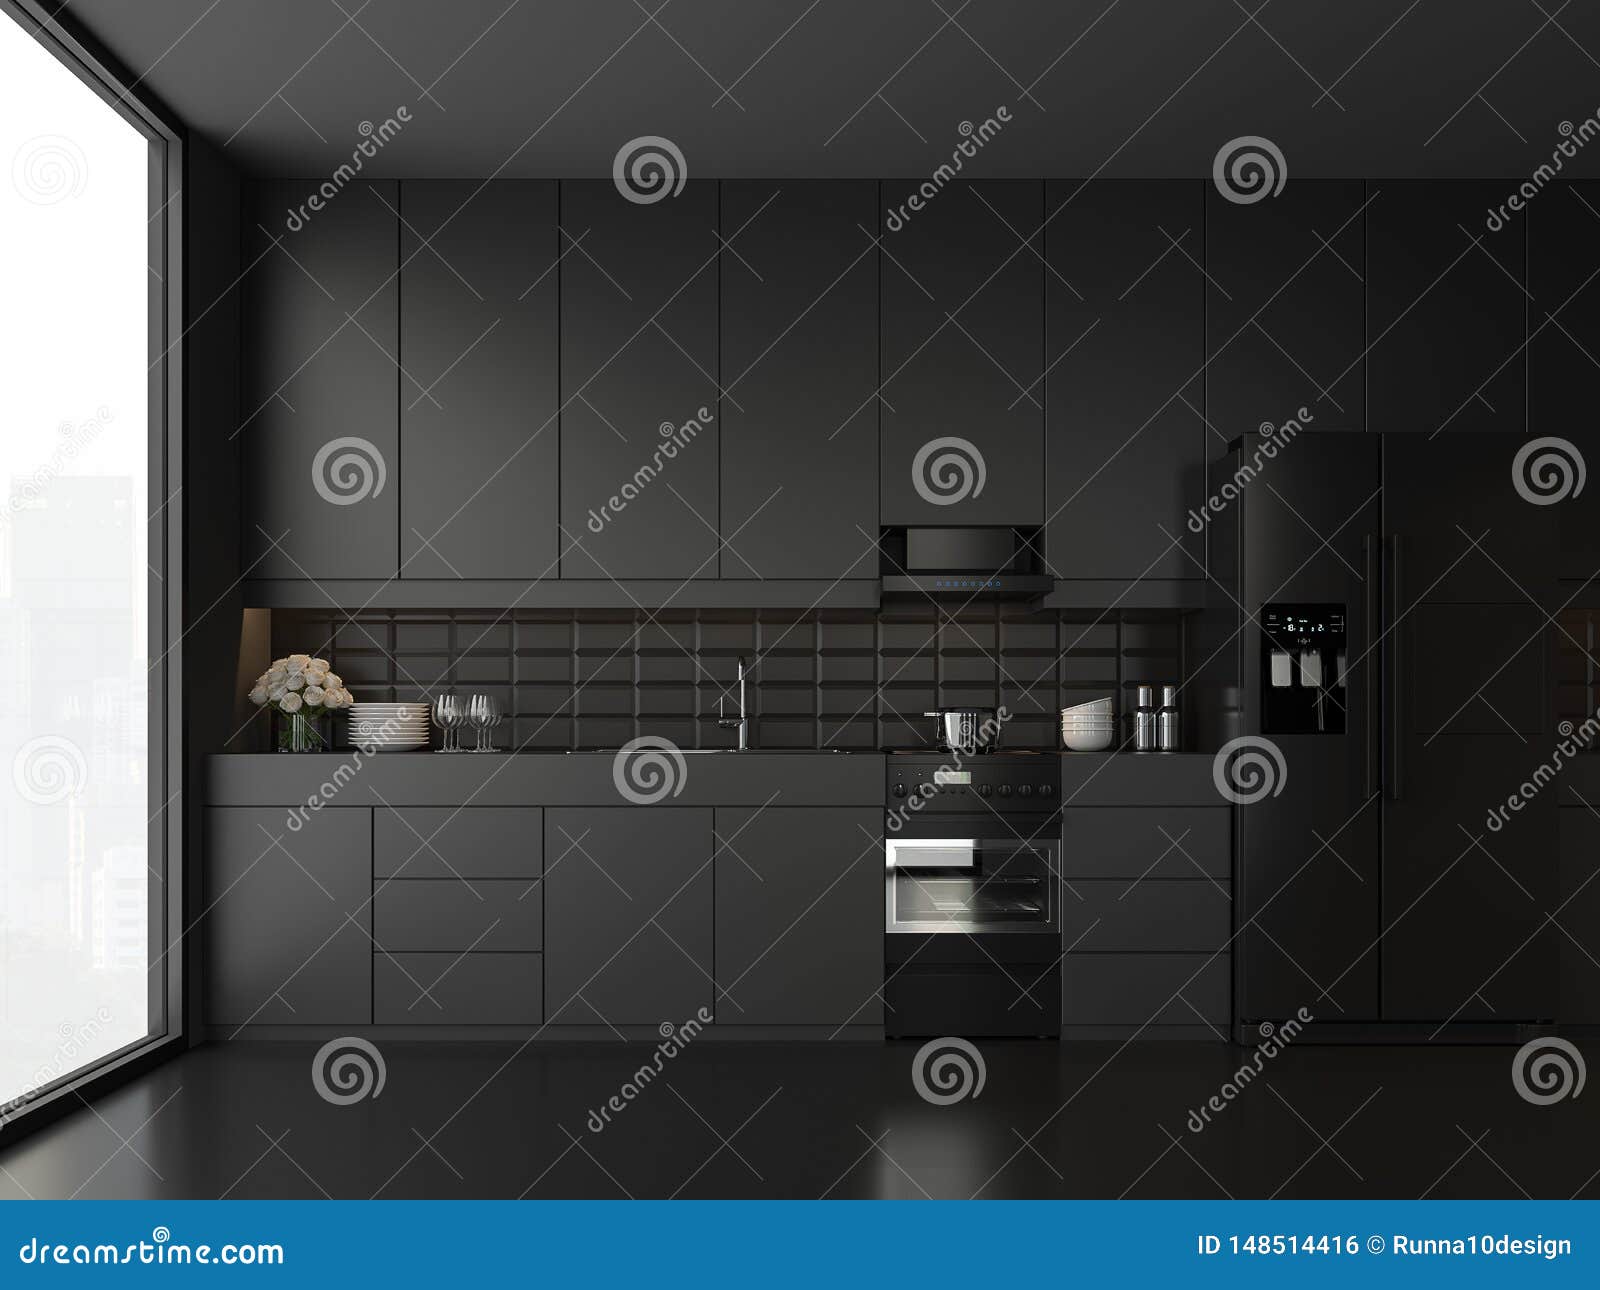 minimal style black kitchen 3d render